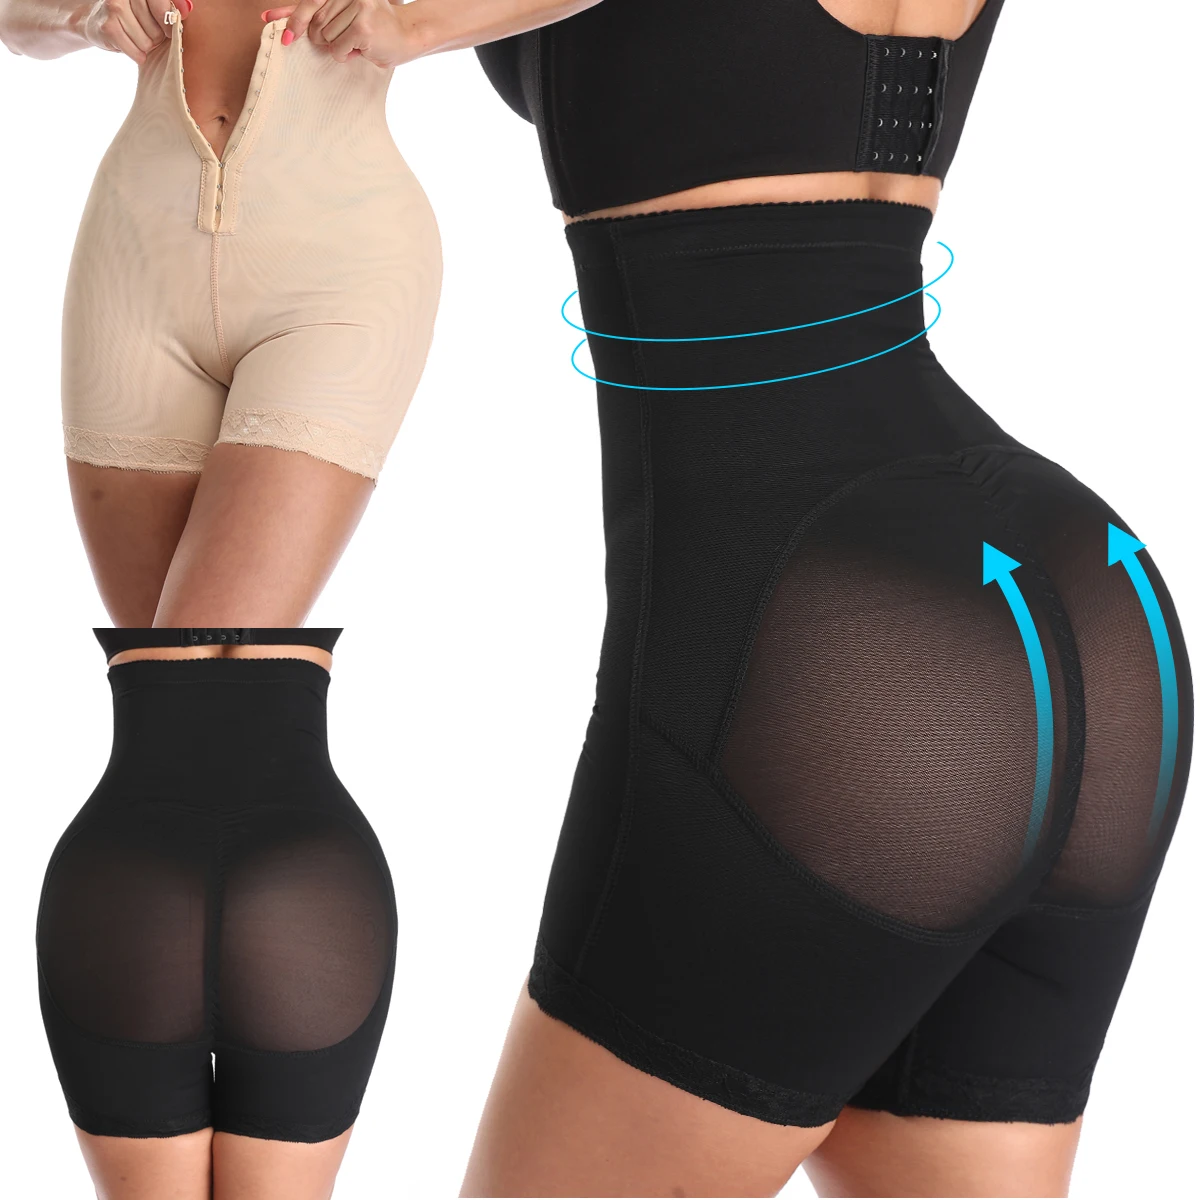 Top design functional body shaper tummy control for women high waist leggings butt lifter